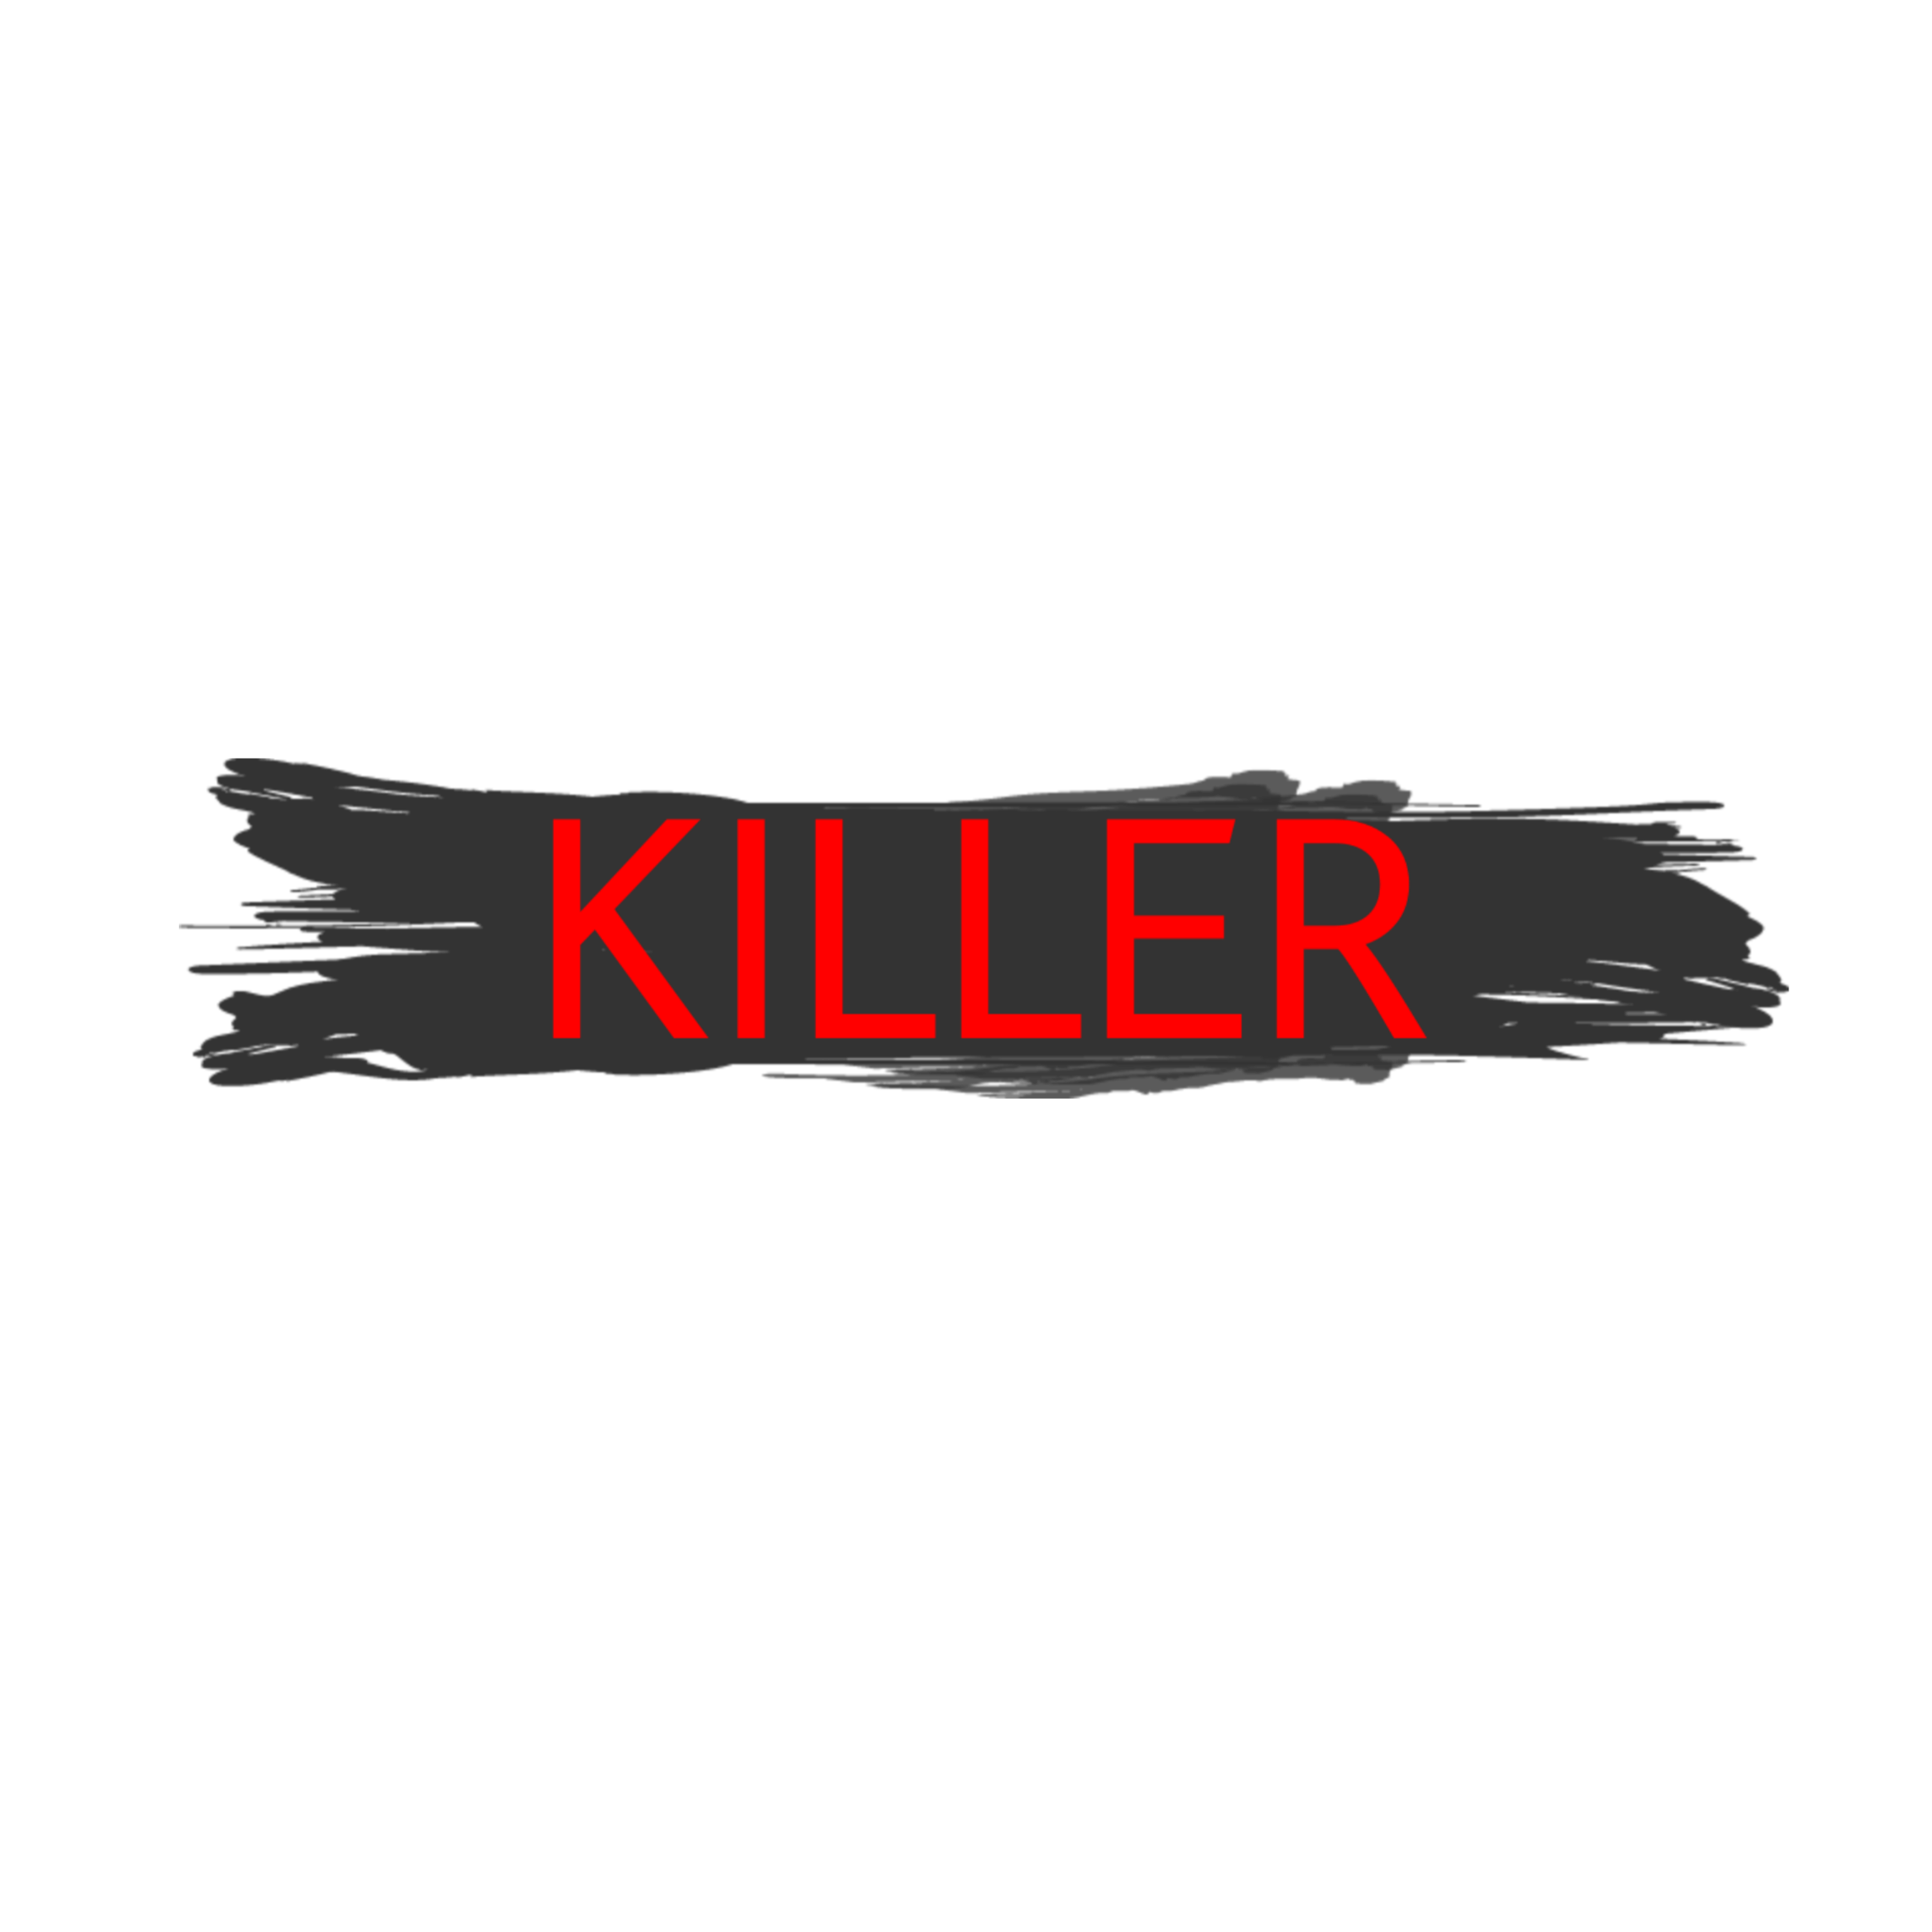 Killer com. Надпись Killer. Убийственные надписи. Надпись киллер красиво.